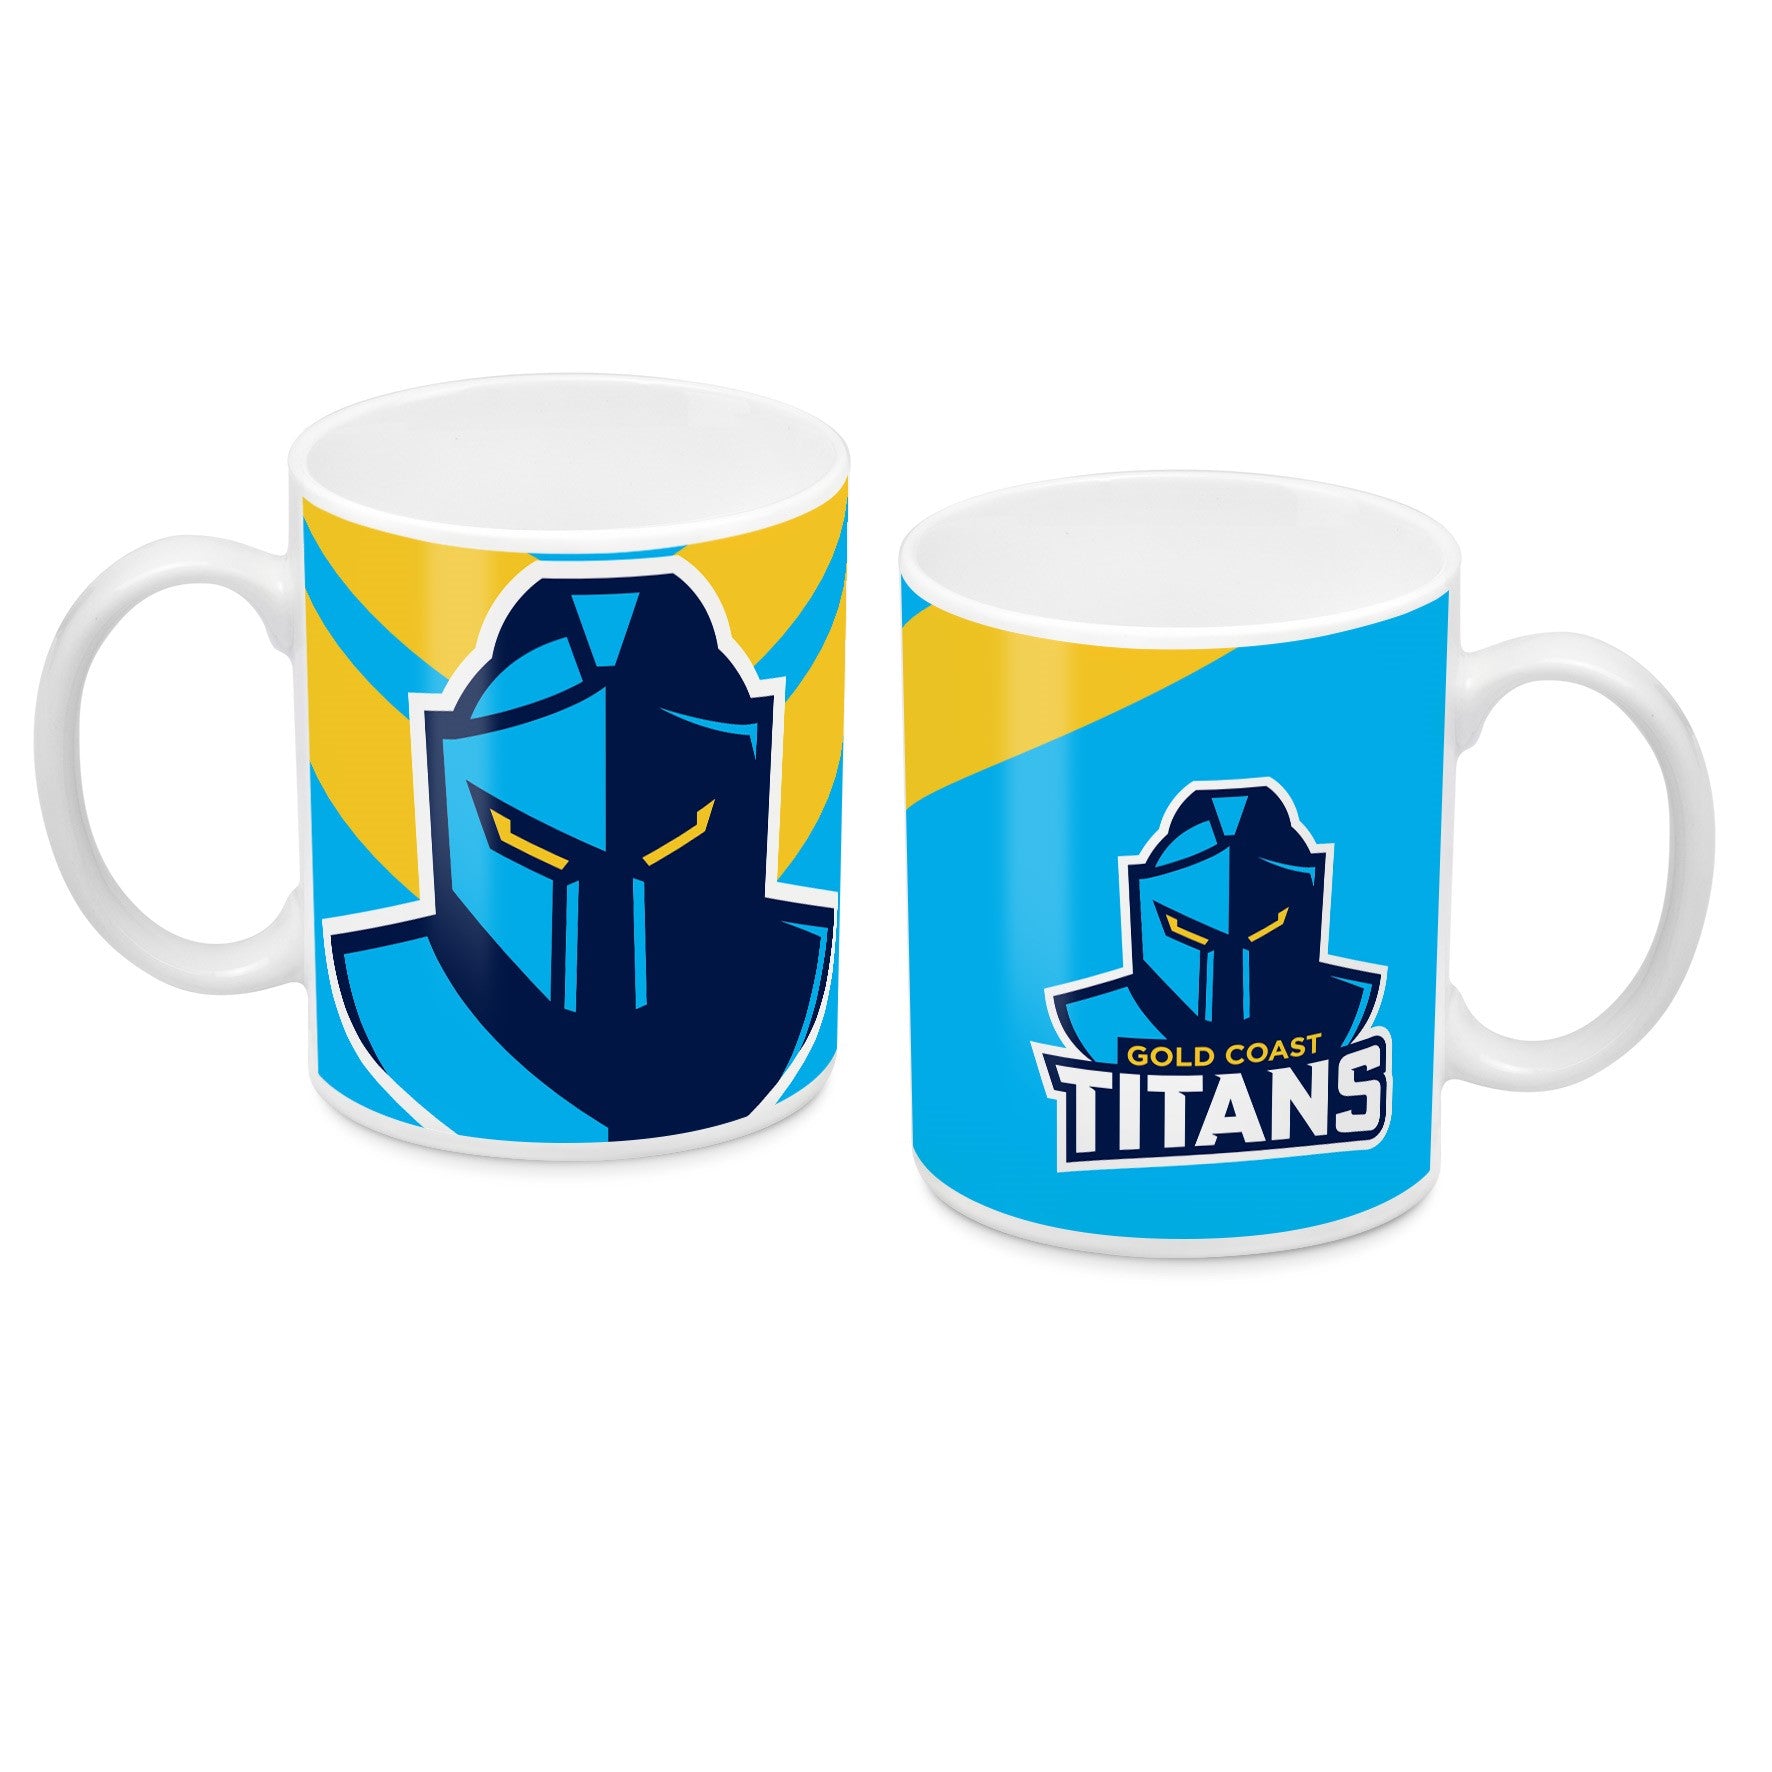 Gold Coast Titans Ceramic Mug 325ml